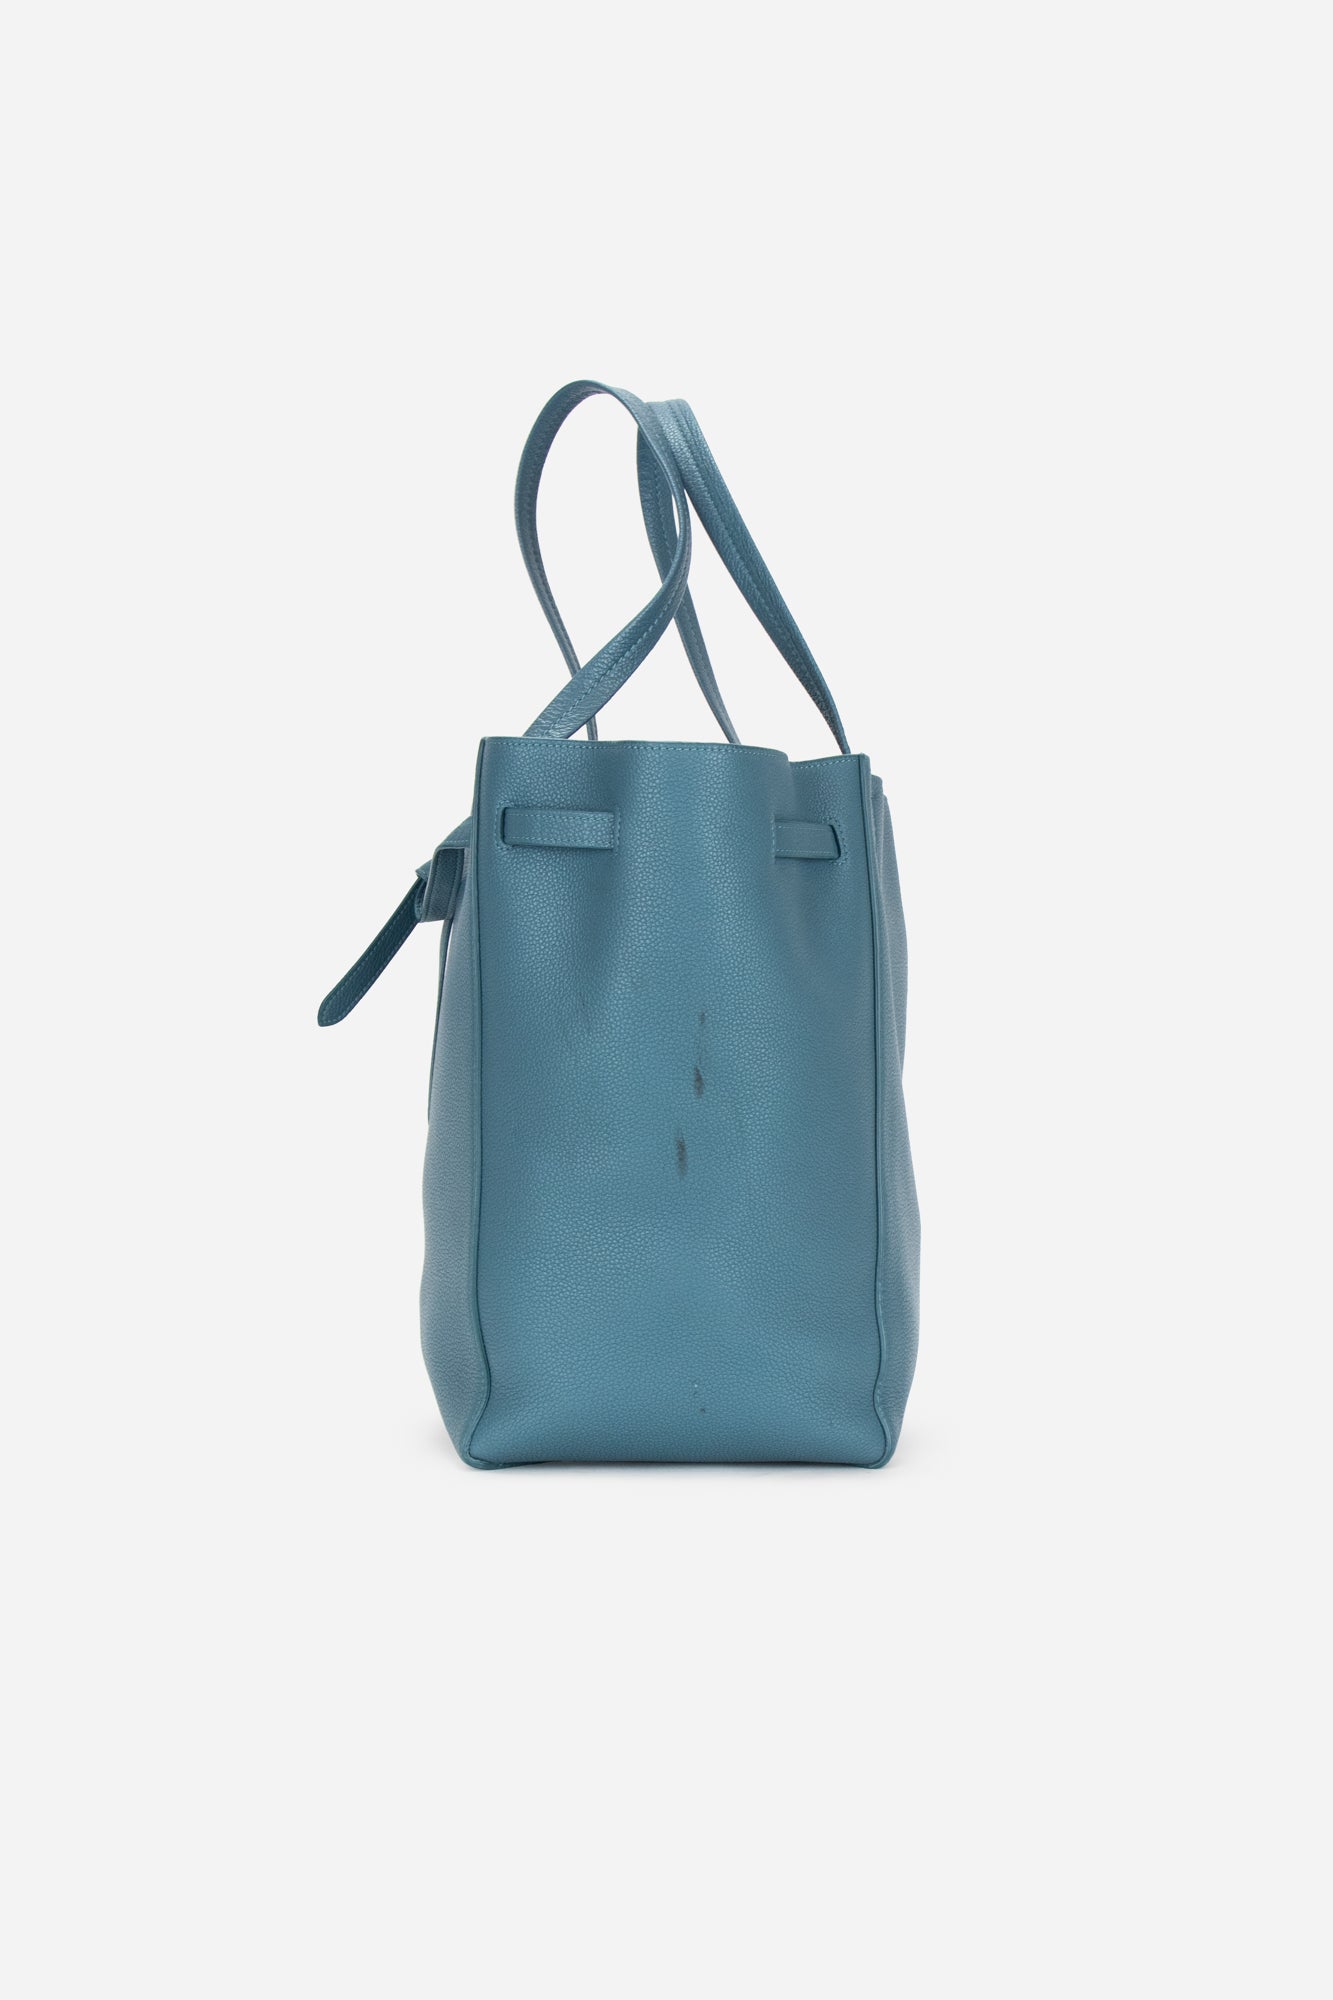 Blue Leather Small Cabas Phantom Tote Bag